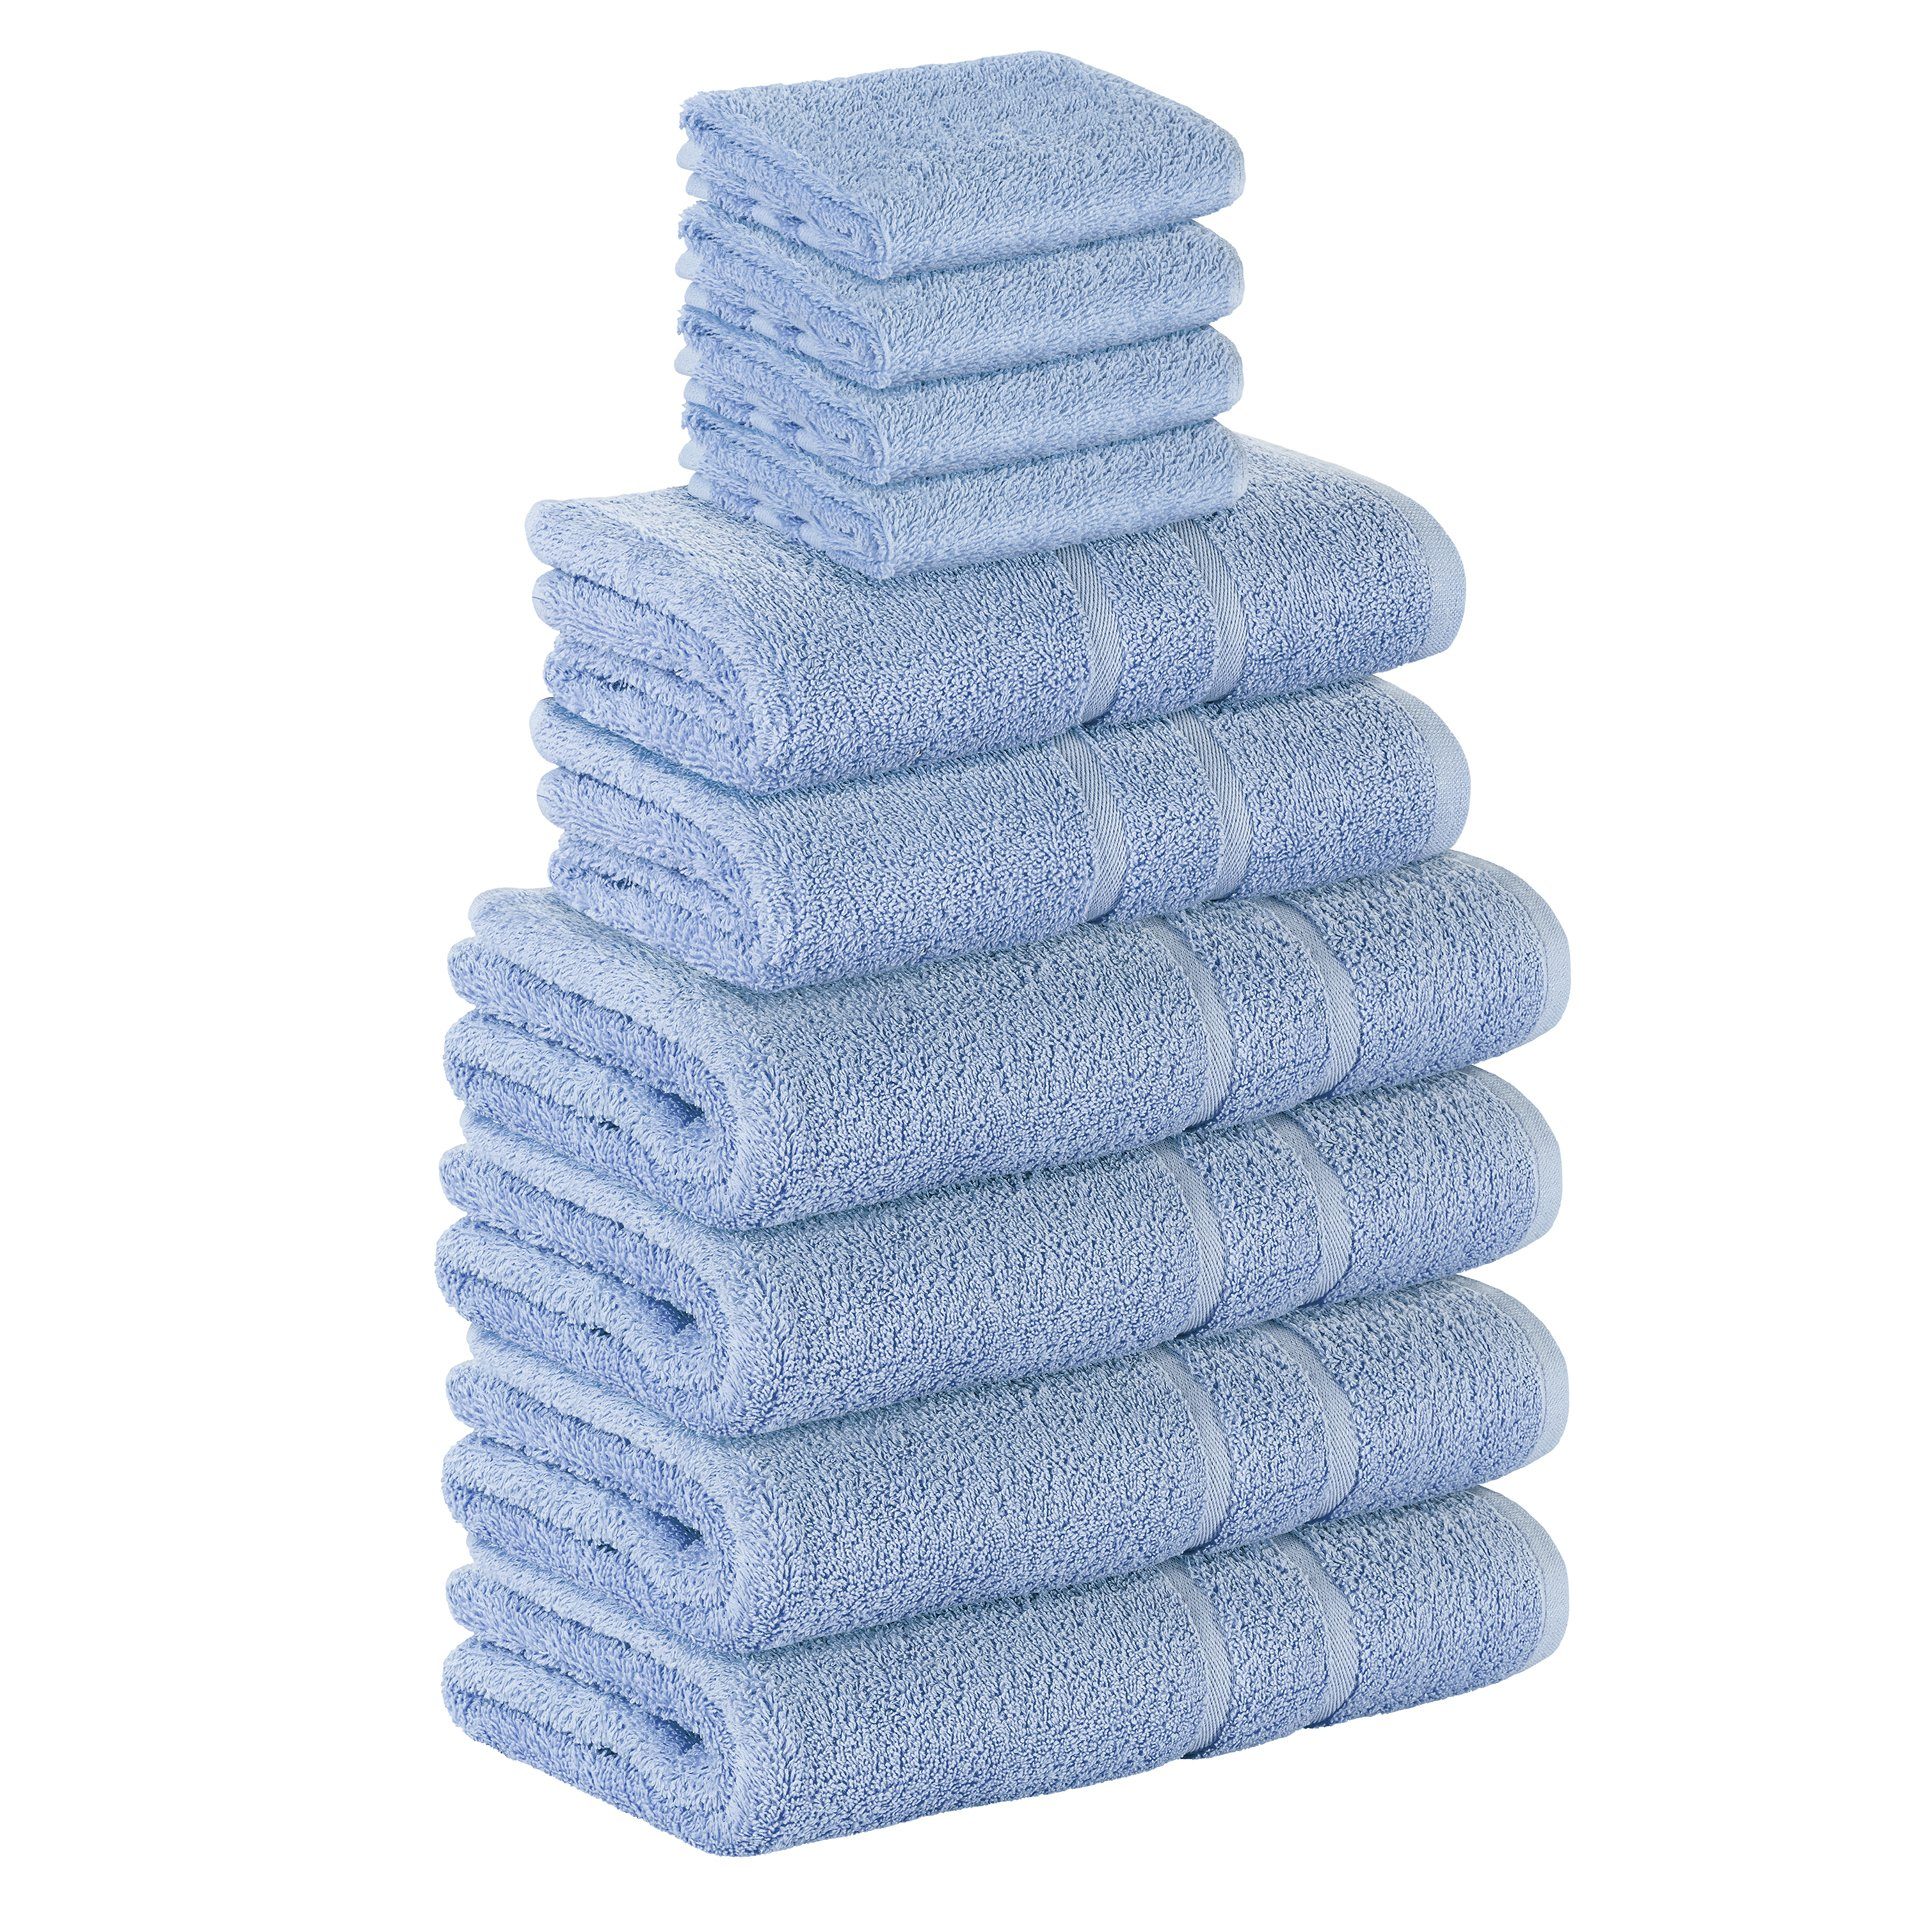 StickandShine Handtuch Set 4x Gästehandtuch 2x Handtücher 4x Duschtücher als SET in verschiedenen Farben (10 Teilig) 100% Baumwolle 500 GSM Frottee 10er Handtuch Pack, 100% Baumwolle 500 GSM Hellblau